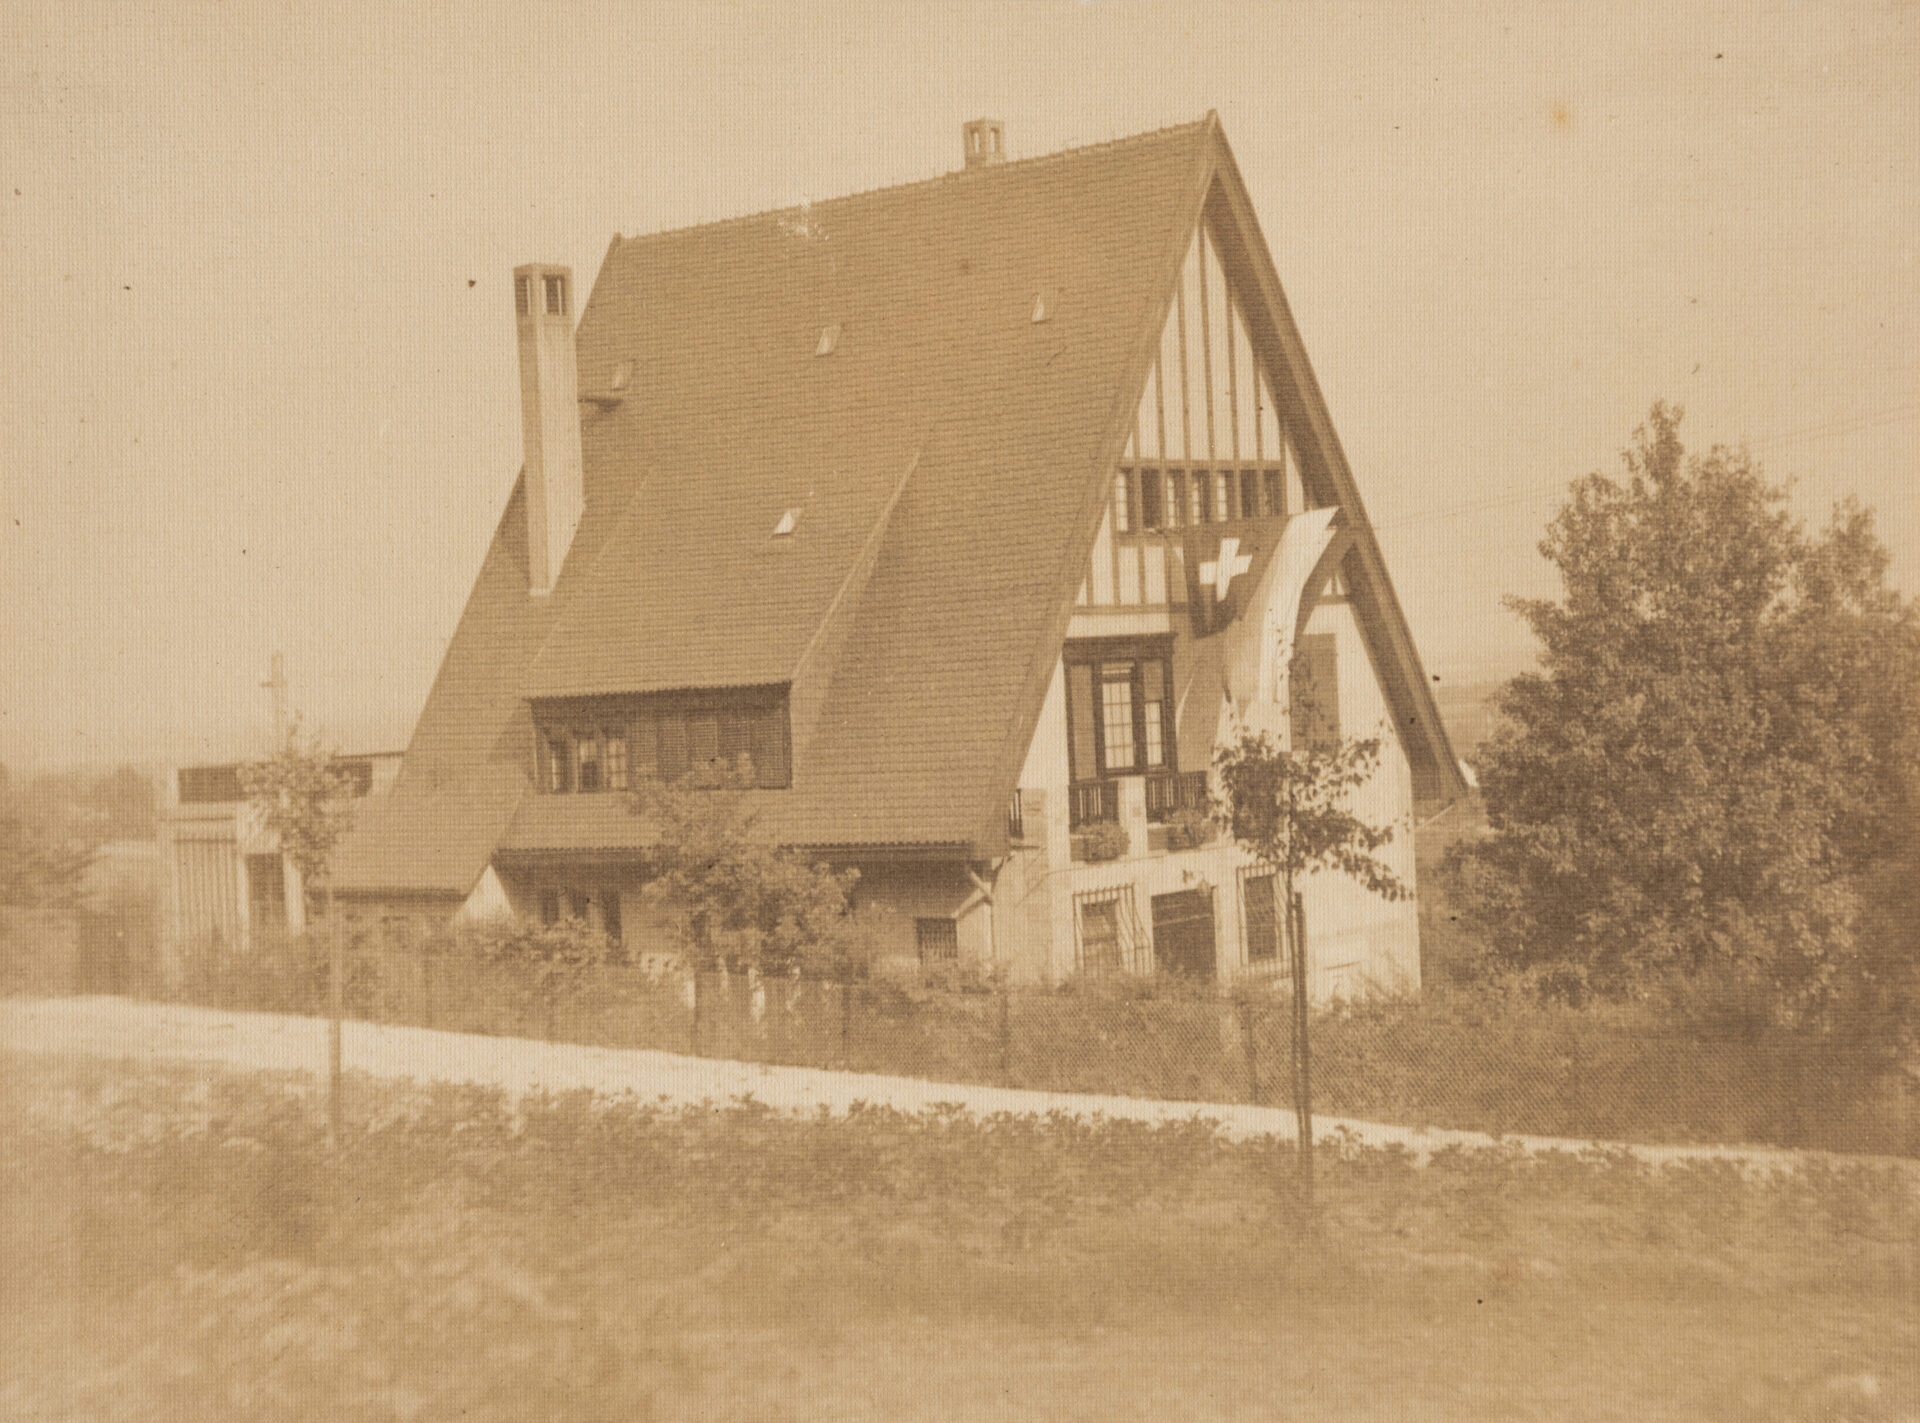 Roedersteins Wohnhaus mit gehisster Schweizer Fahne, Hofheim am Taunus, undatiert, Fotografie